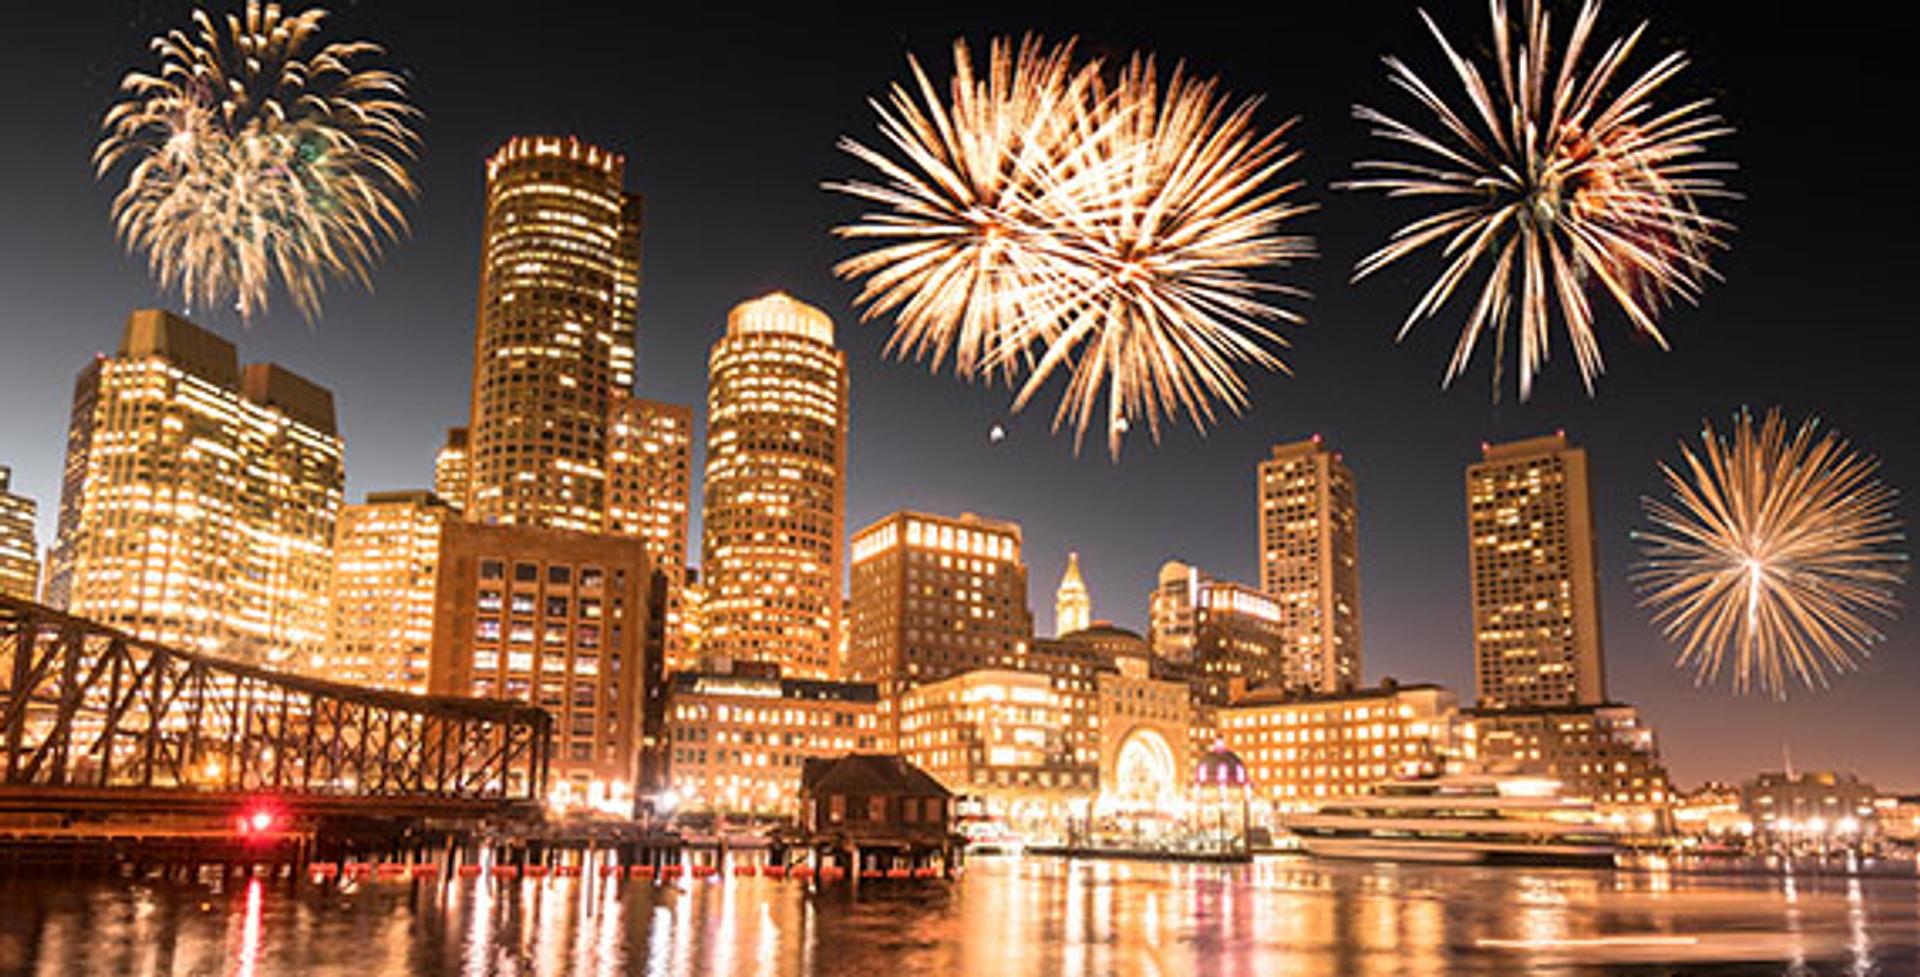 Boston Harborfest: Fireworks